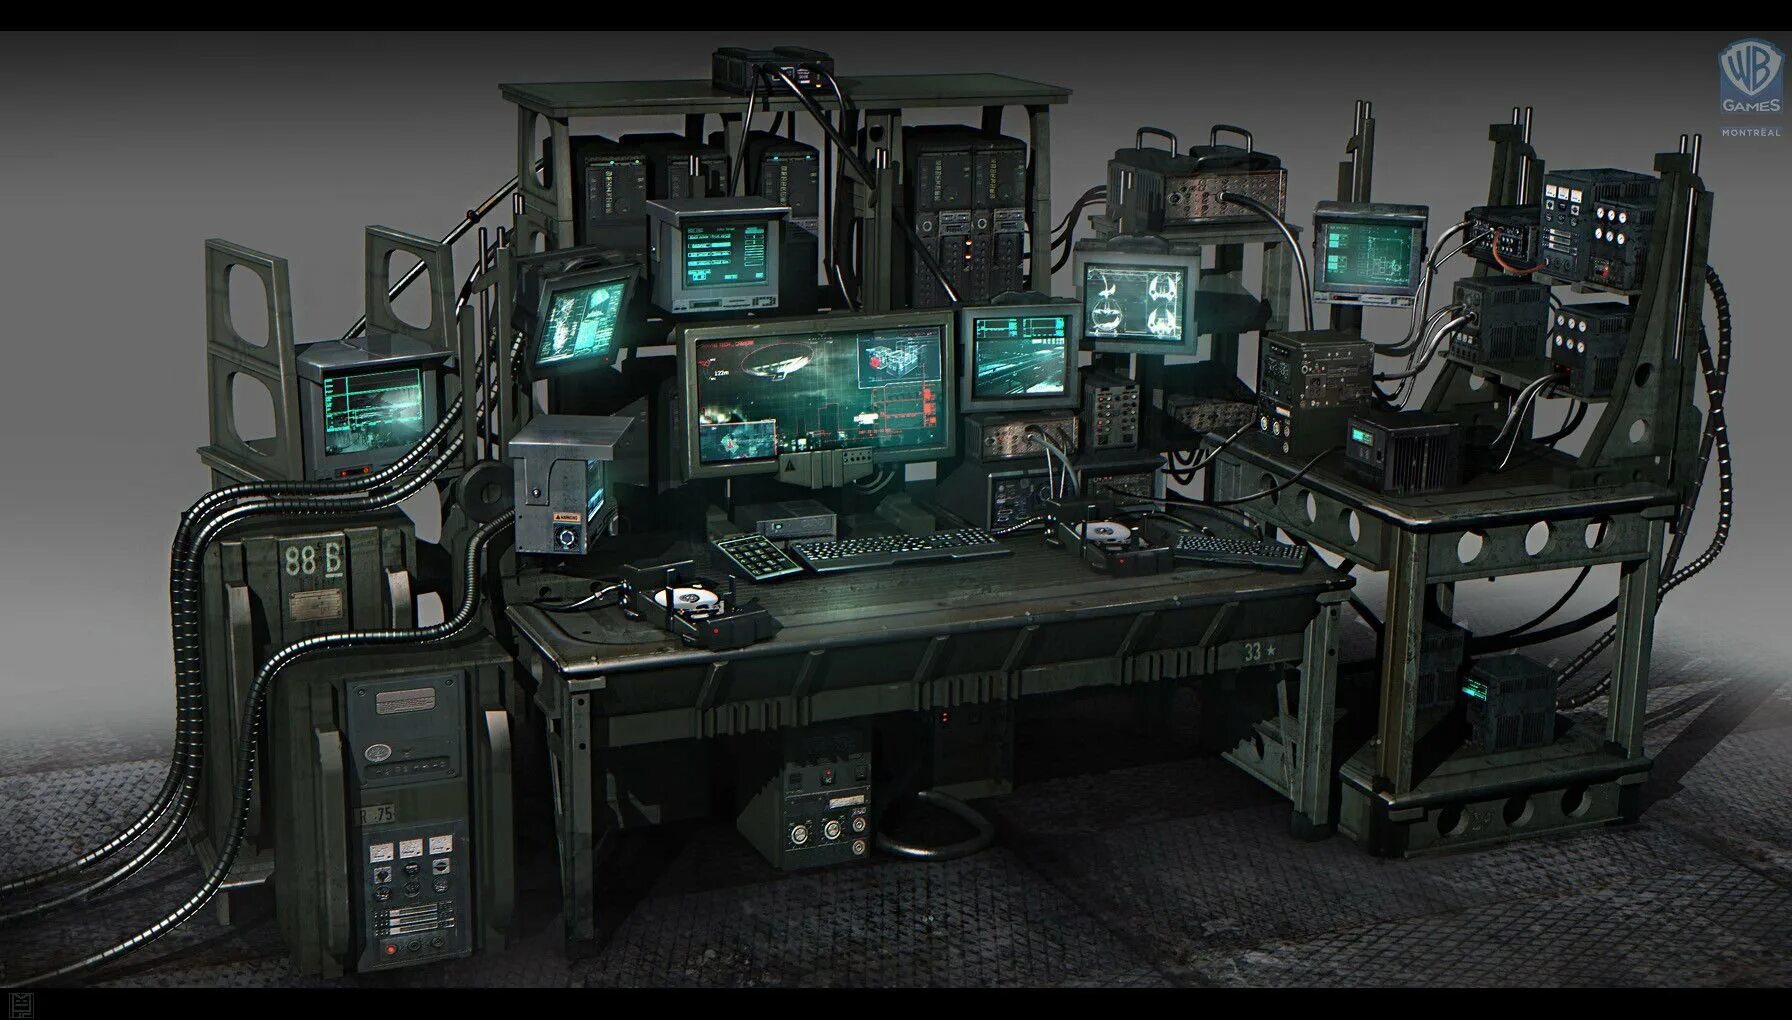 Игровое кресло киберпанк 2077. Лаборатория Cyberpunk 2077. Компьютерный стол в стиле киберпанк. Футуристический компьютерный стол. Парк компьютерный игр